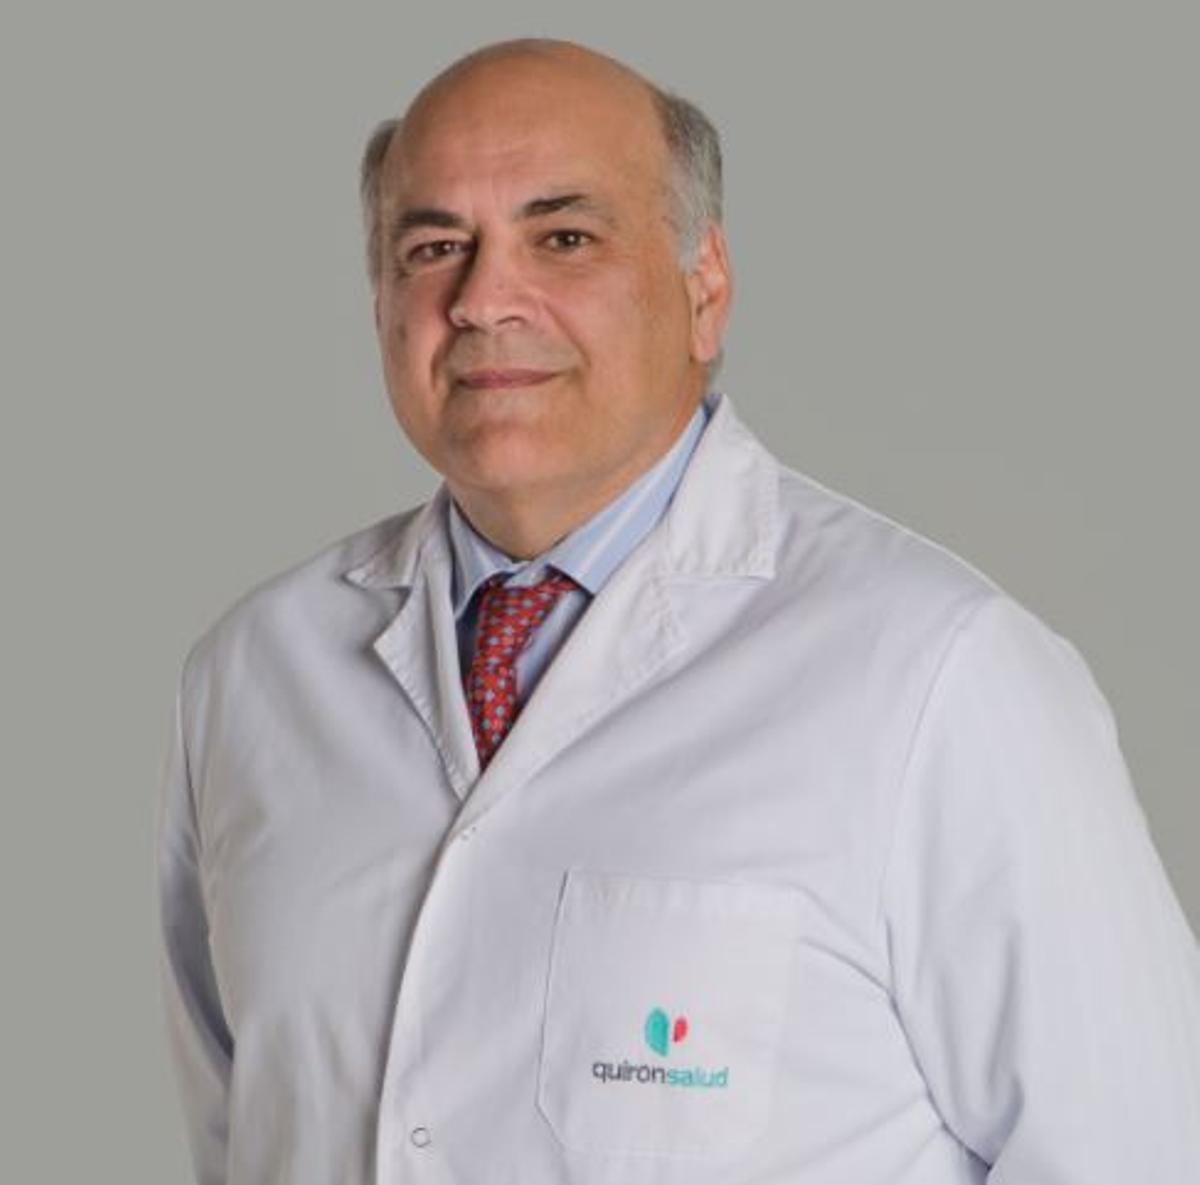 Joseba Rebollo es un oncólogo del Hospital Quirónsalud de Torrevieja y Alicante con gran experiencia en la materia.